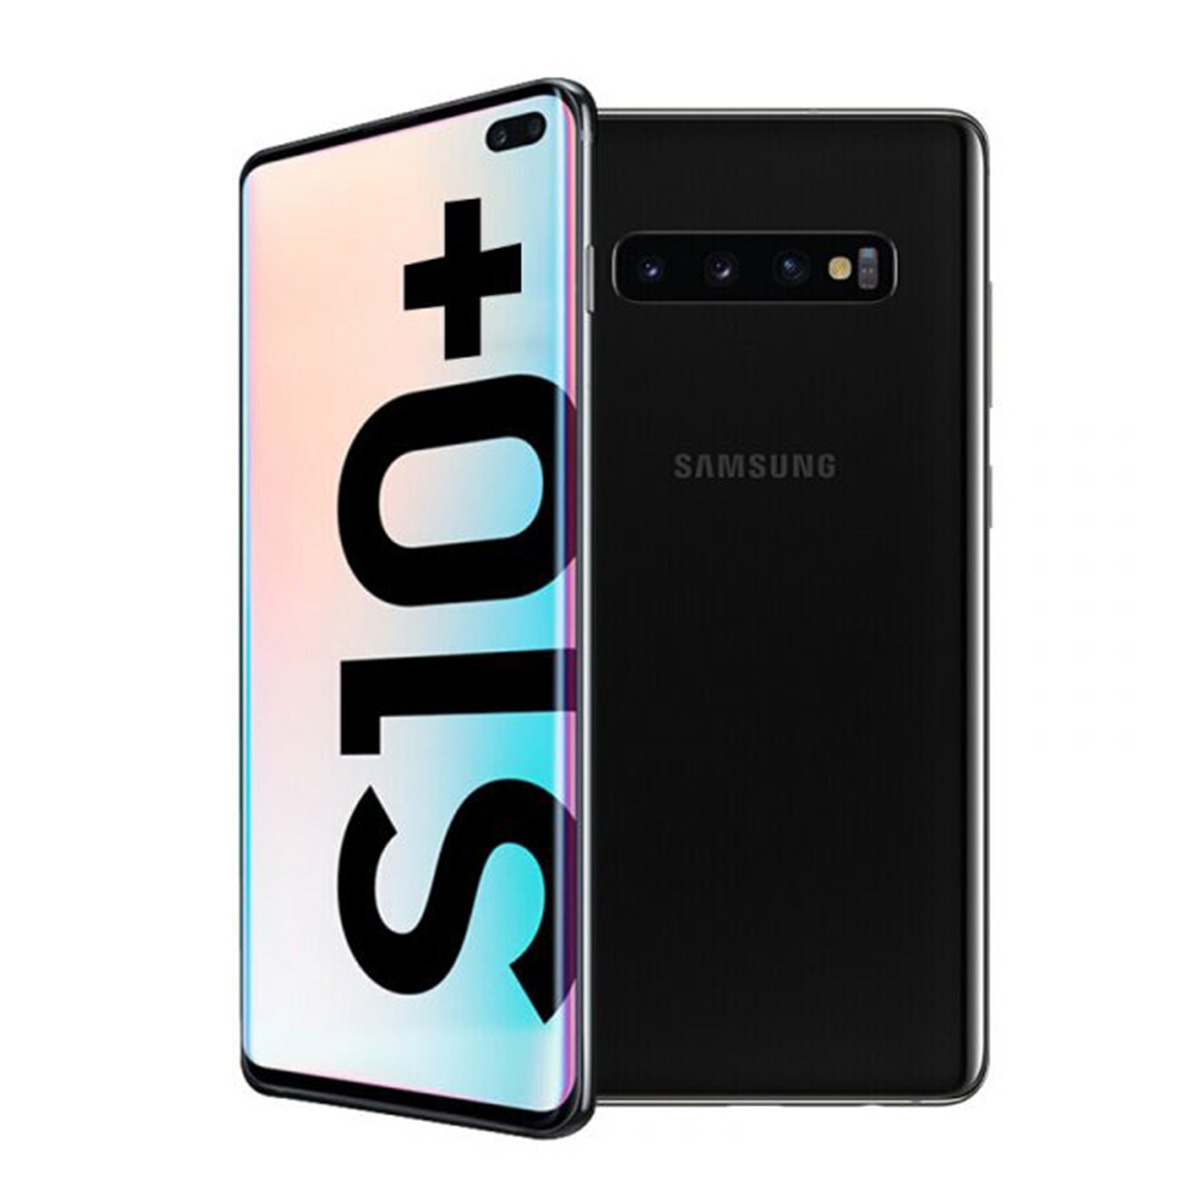 Galaxy S10＋ Prism Black 128 GB au スマートフォン本体